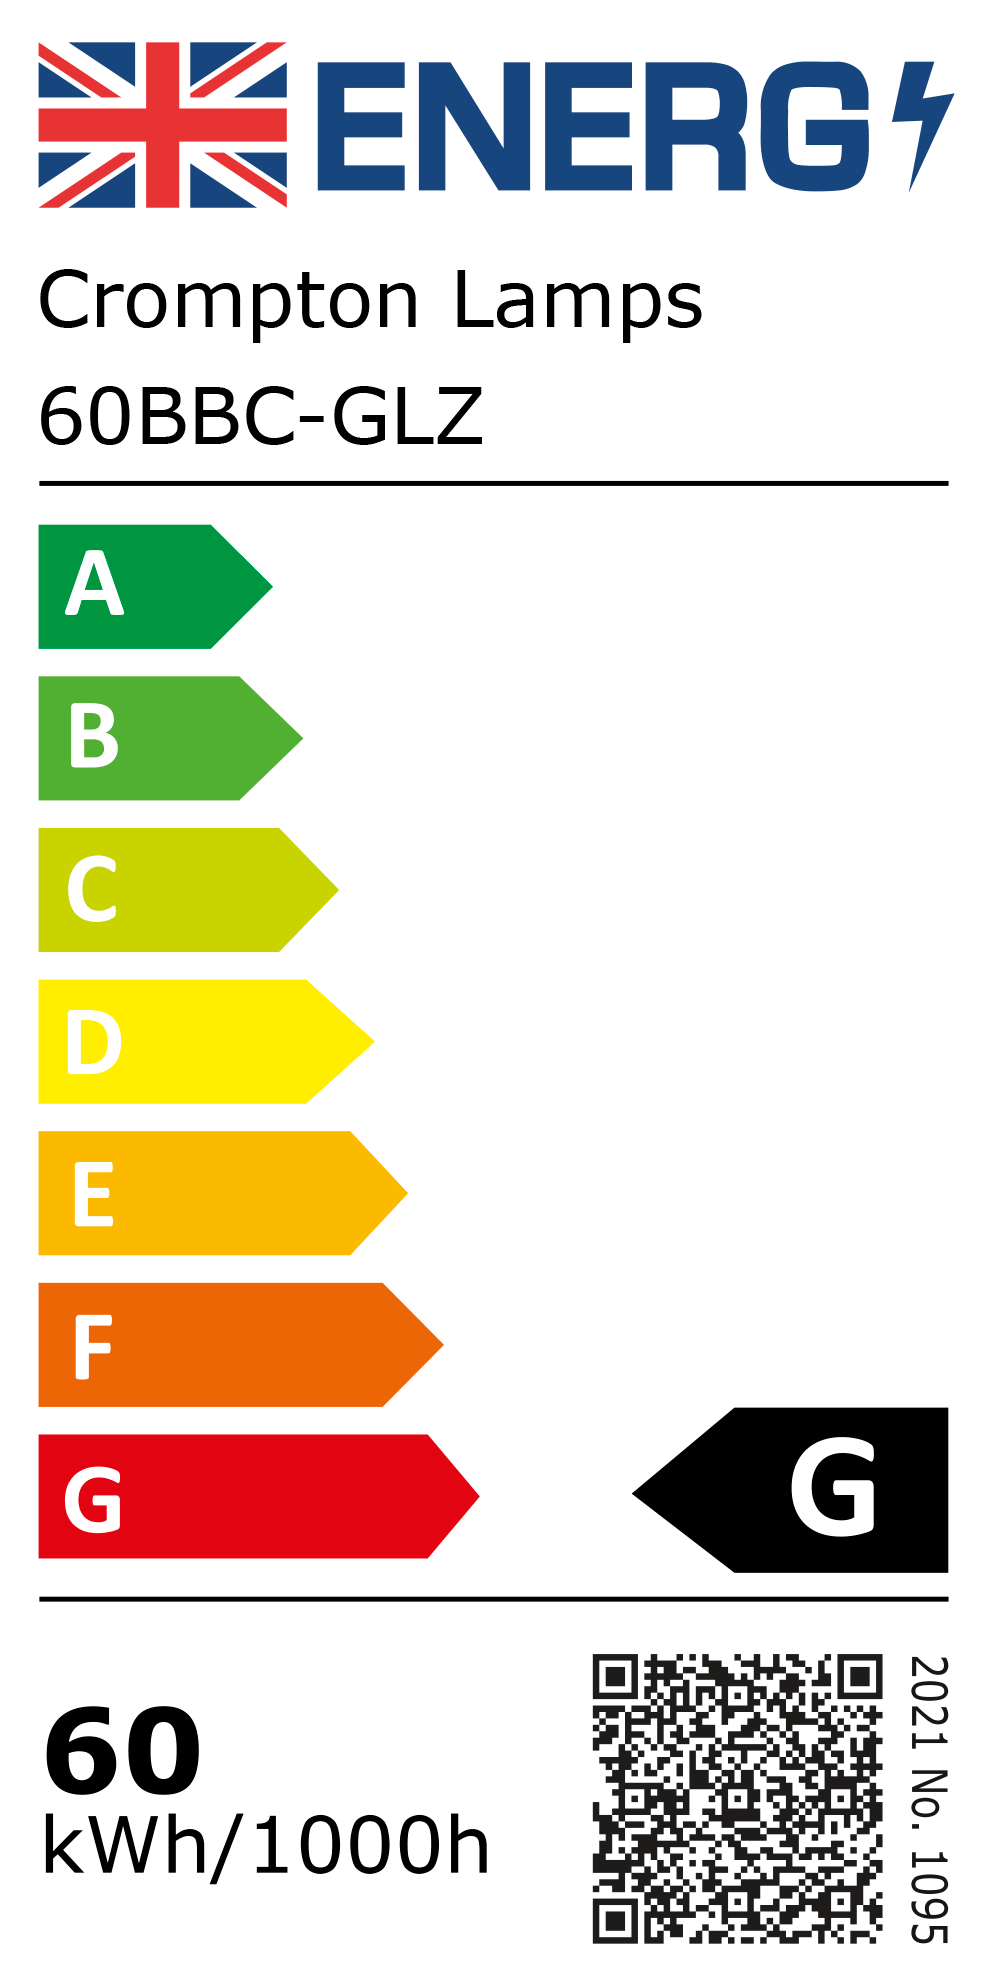 New 2021 Energy Rating Label: Stock Code 60BBC-GLZ